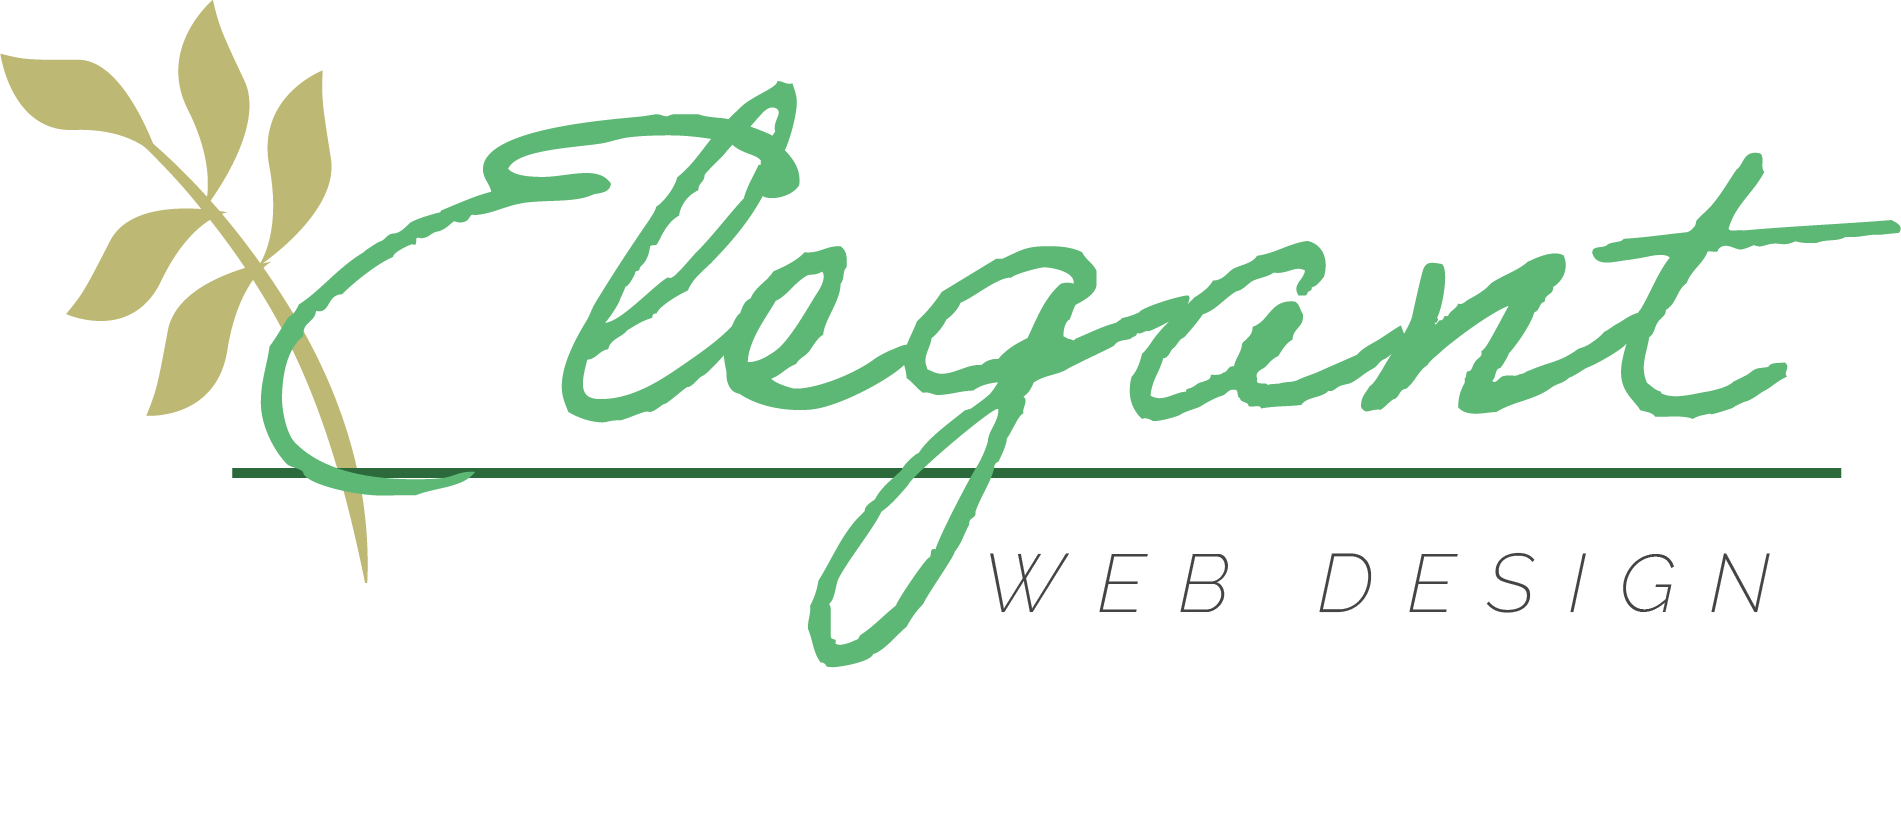 Elegant Web Design